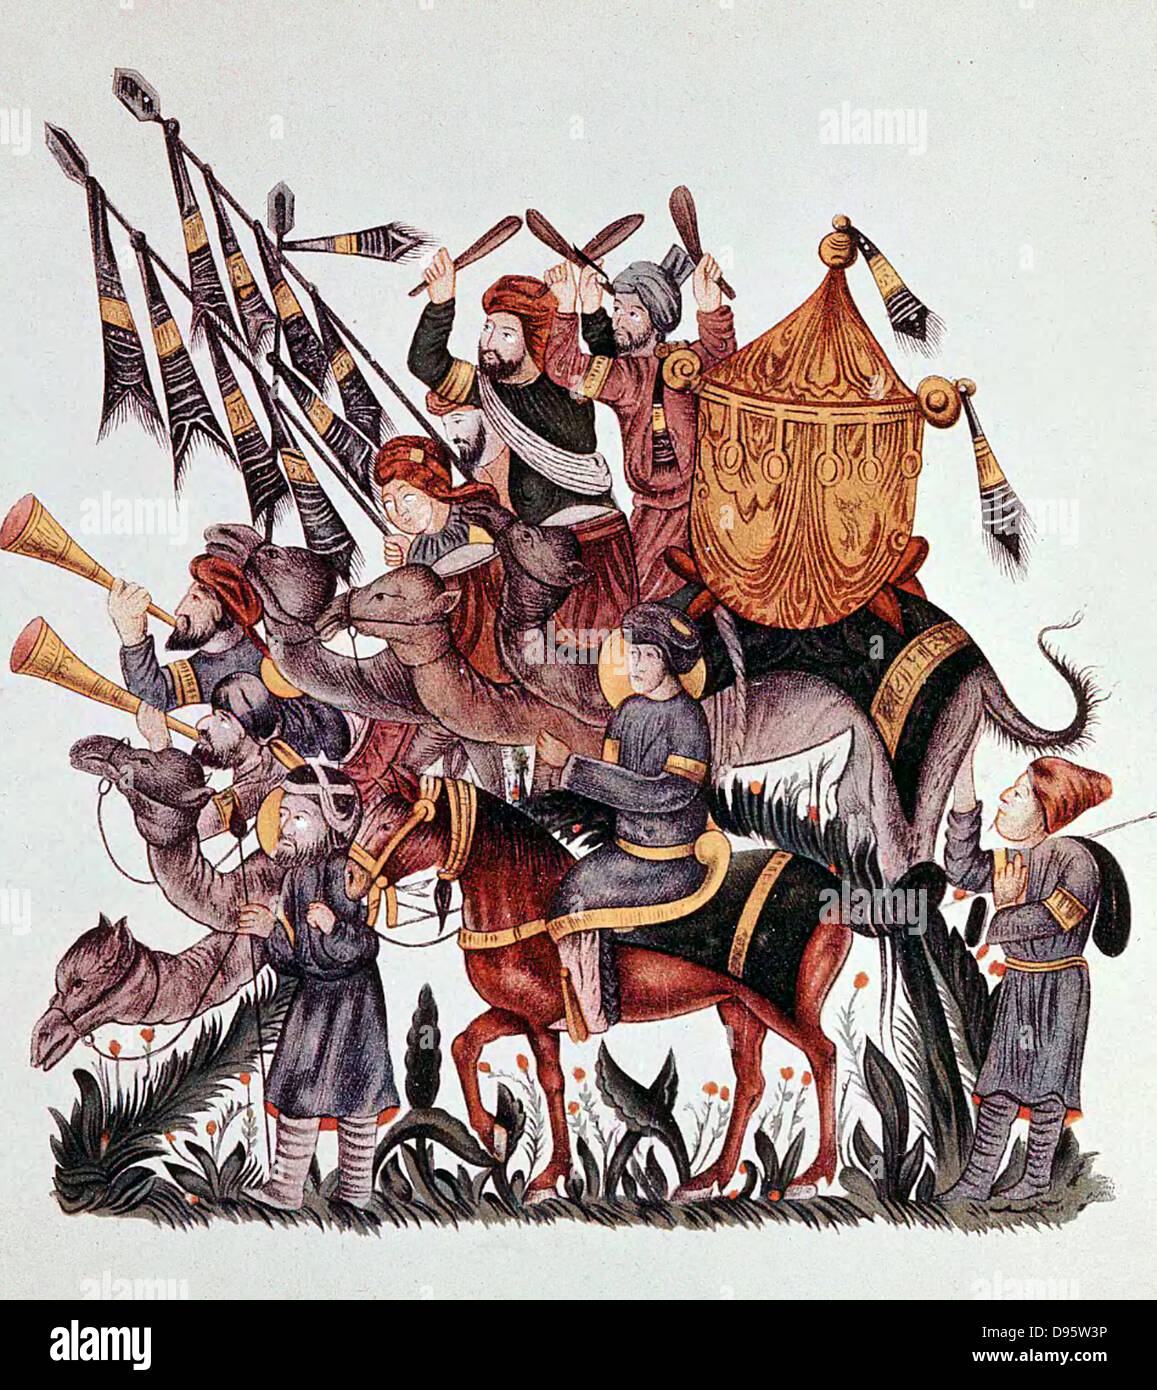 Alfieri, tamburini e trombettieri di un esercito di saraceni montato su cammelli e cavalli. Xiii secolo manoscritto arabo. Foto Stock